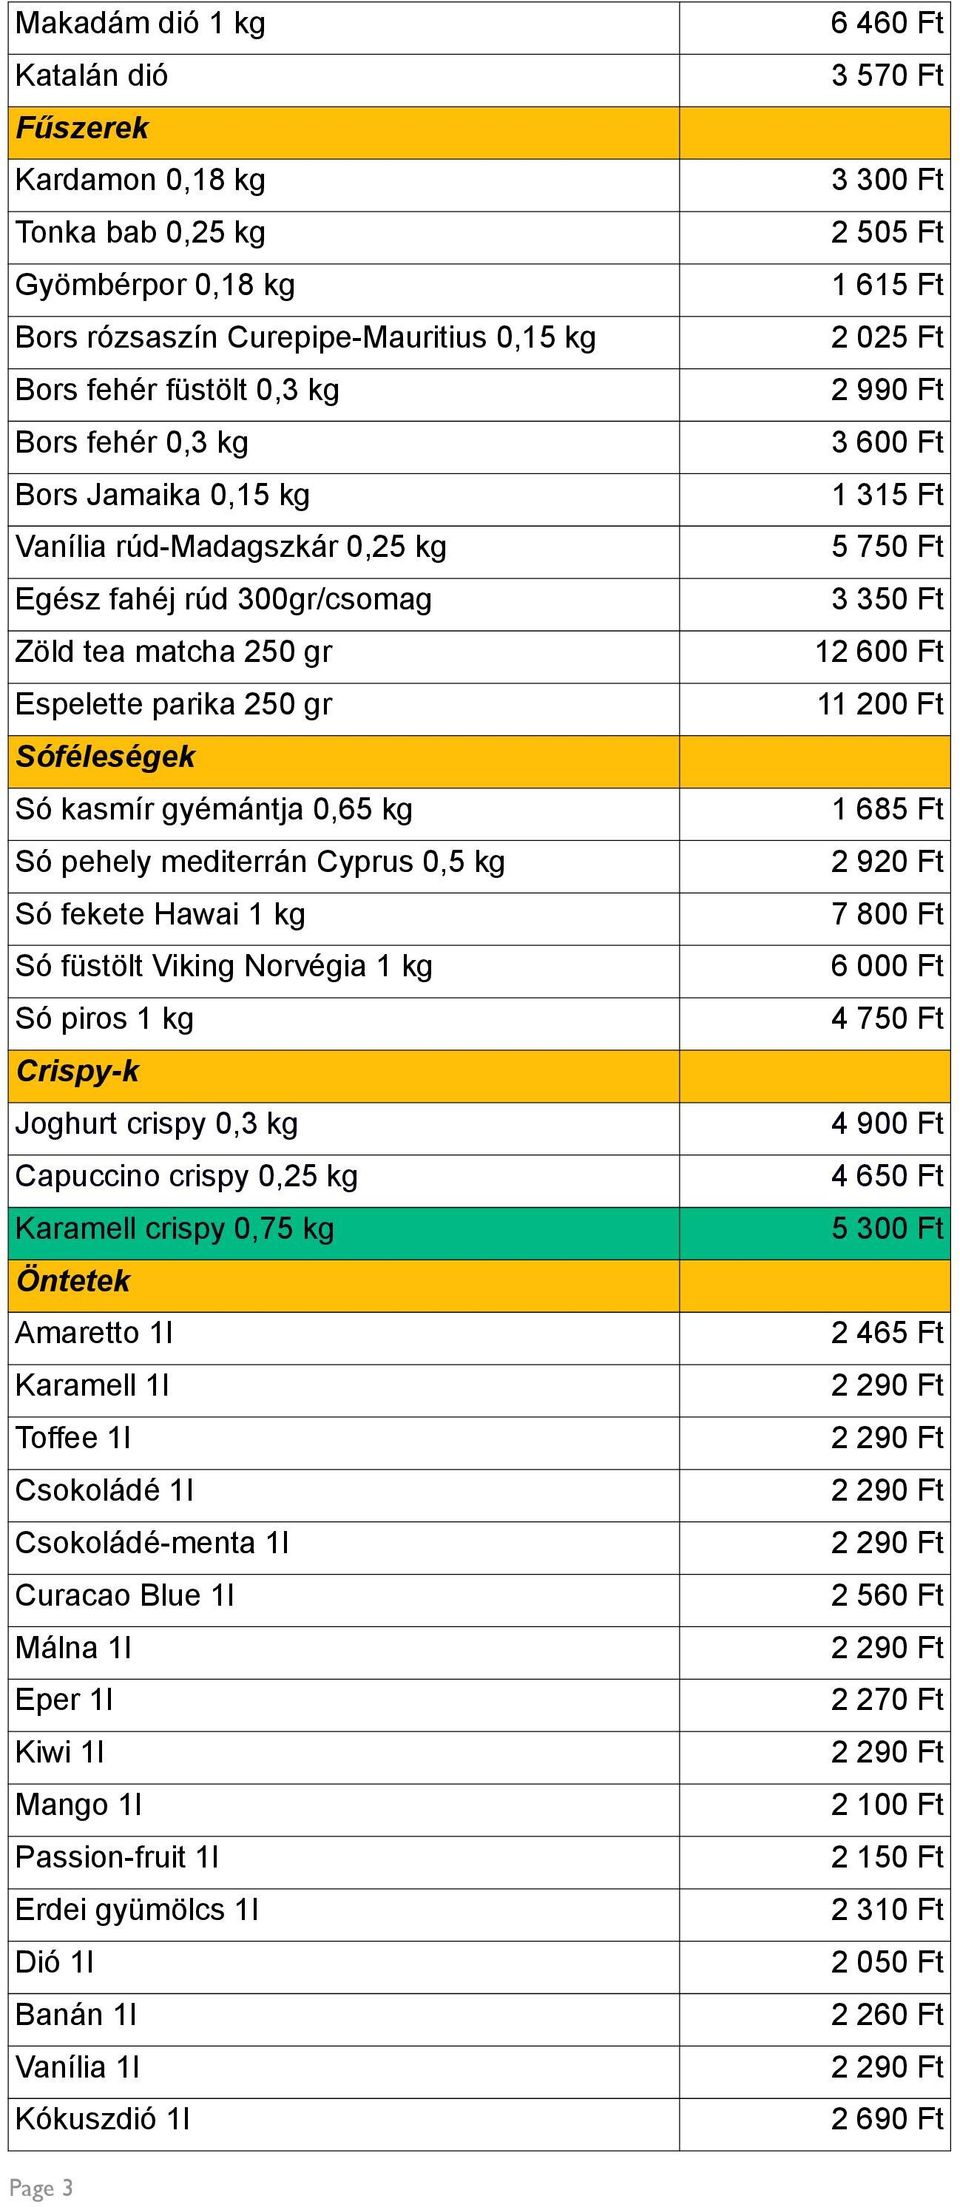 kg Só füstölt Viking Norvégia 1 kg Só piros 1 kg Crispy-k Joghurt crispy 0,3 kg Capuccino crispy 0,25 kg Karamell crispy 0,75 kg Öntetek Amaretto 1l Karamell 1l Toffee 1l Csokoládé 1l Csokoládé-menta